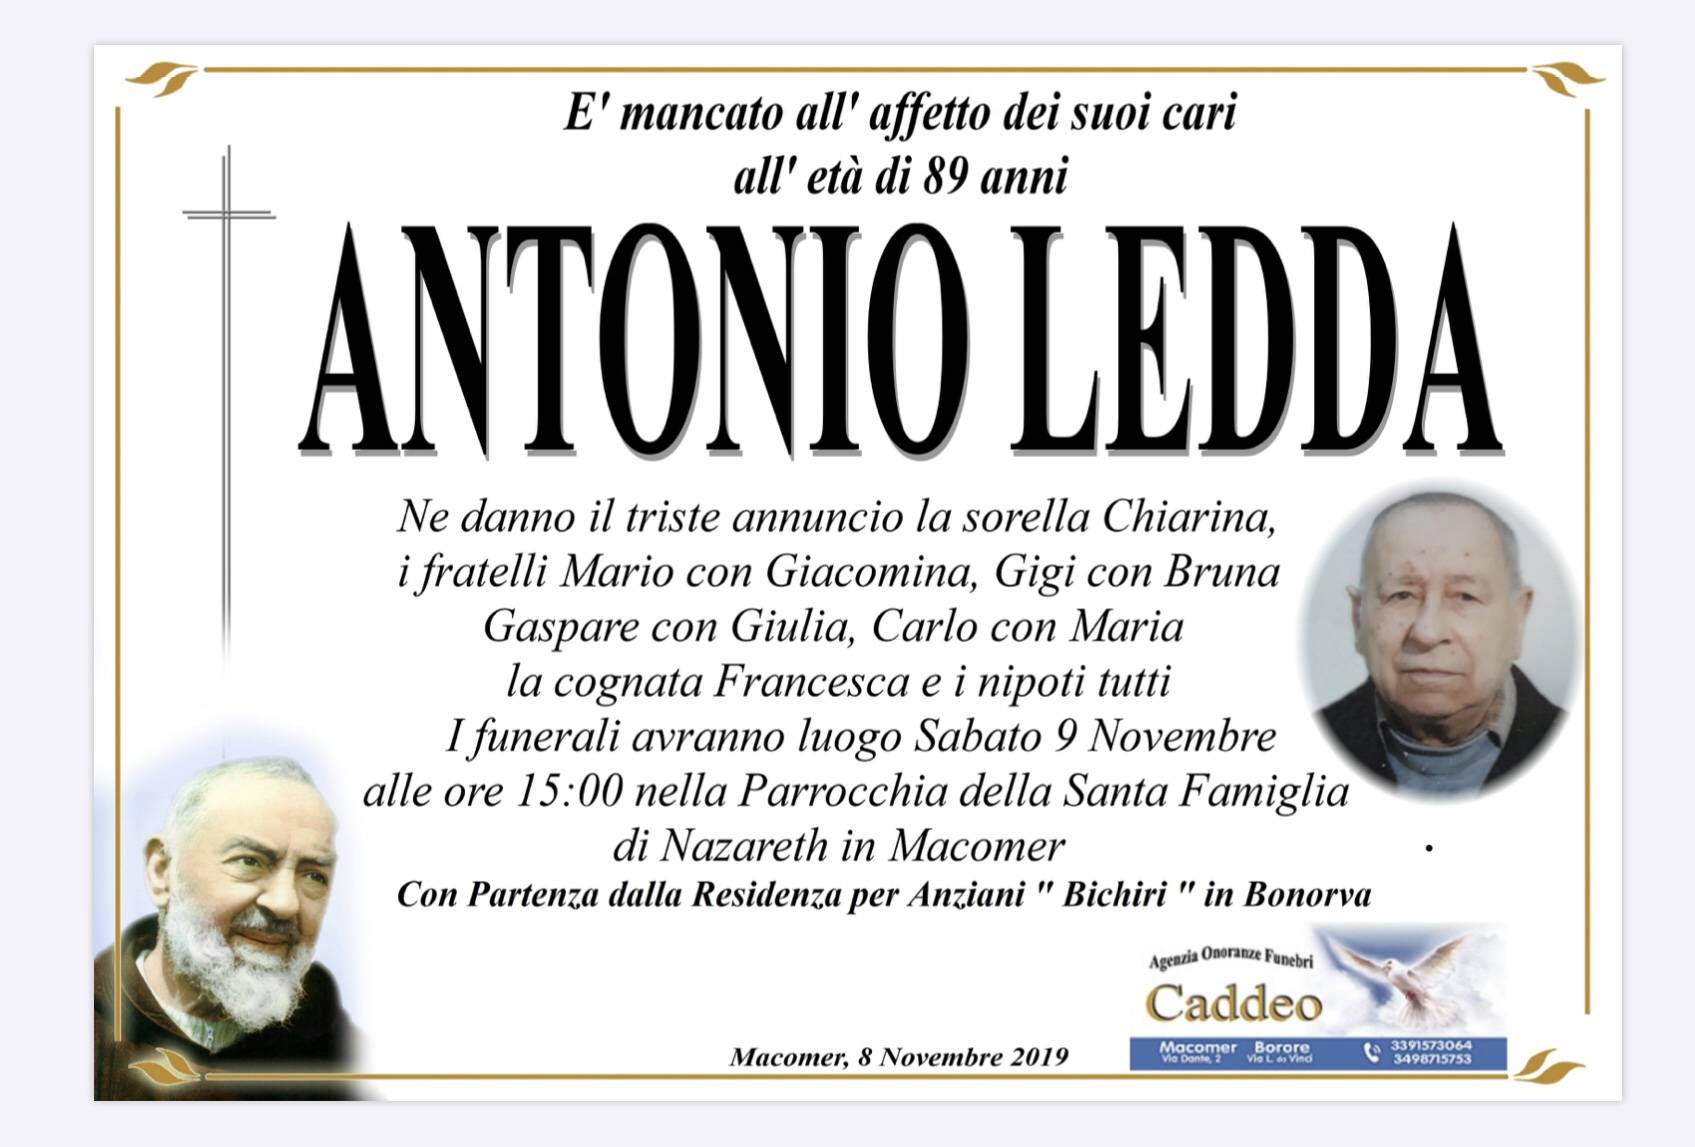 Antonio Francesco Ledda